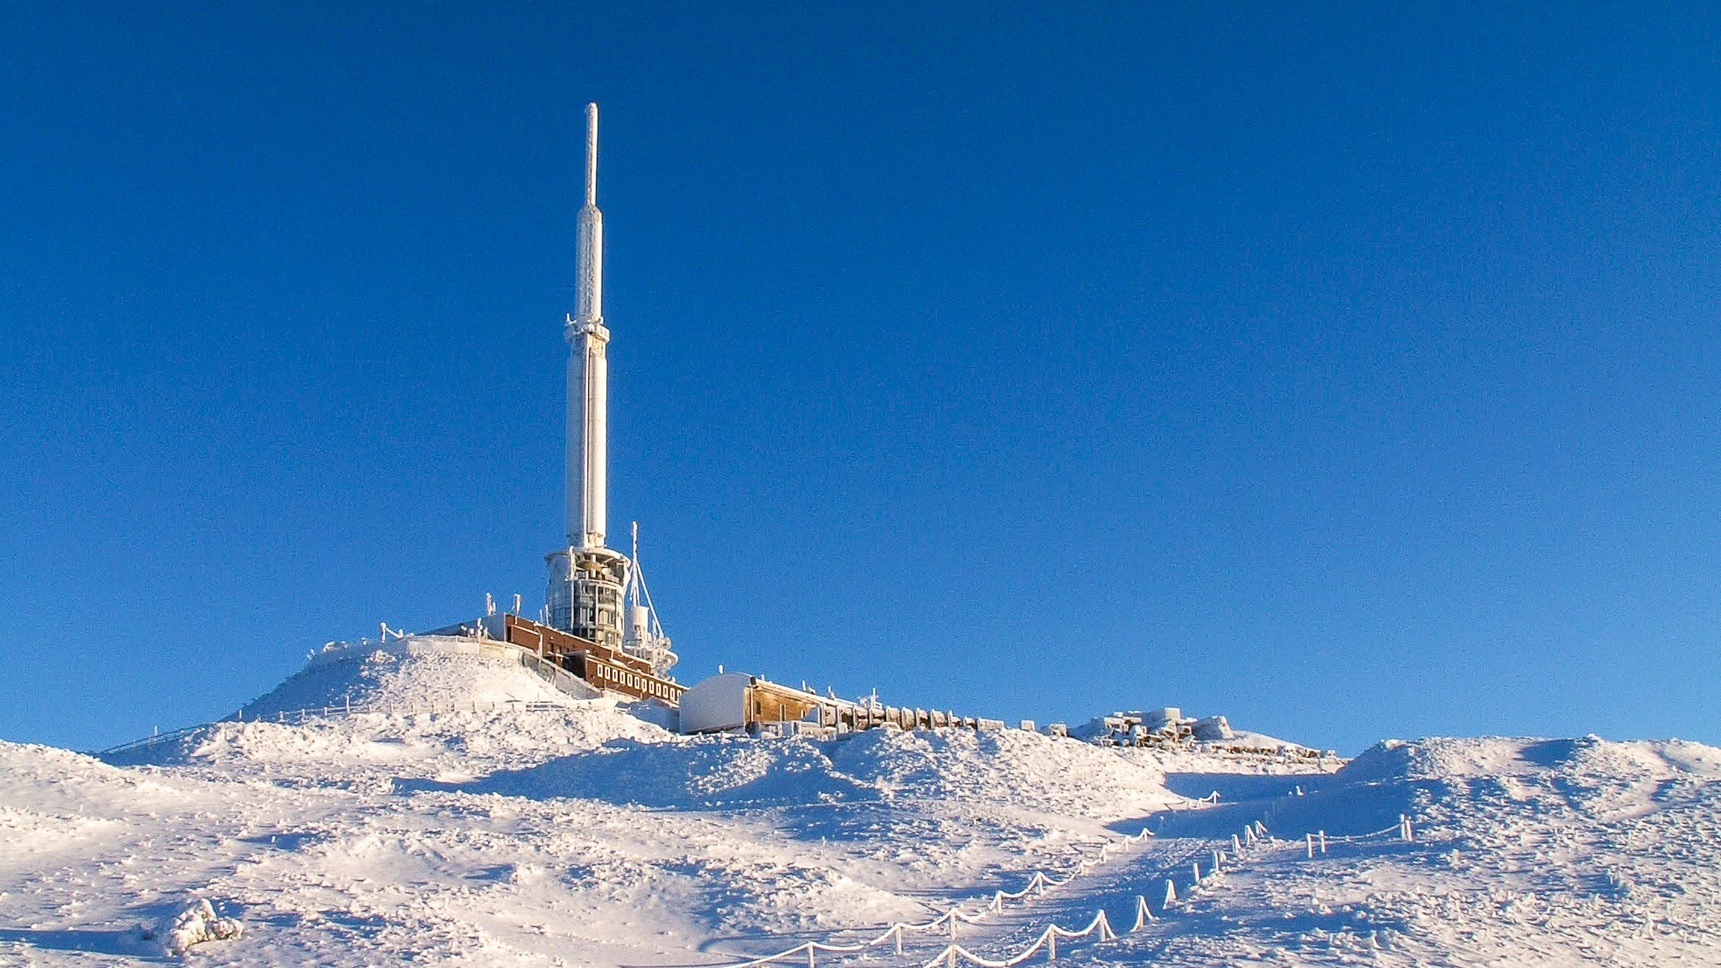 Le Laboratoire de Physique et le relais de télévision au sommet de Puy de Dôme sous la neige